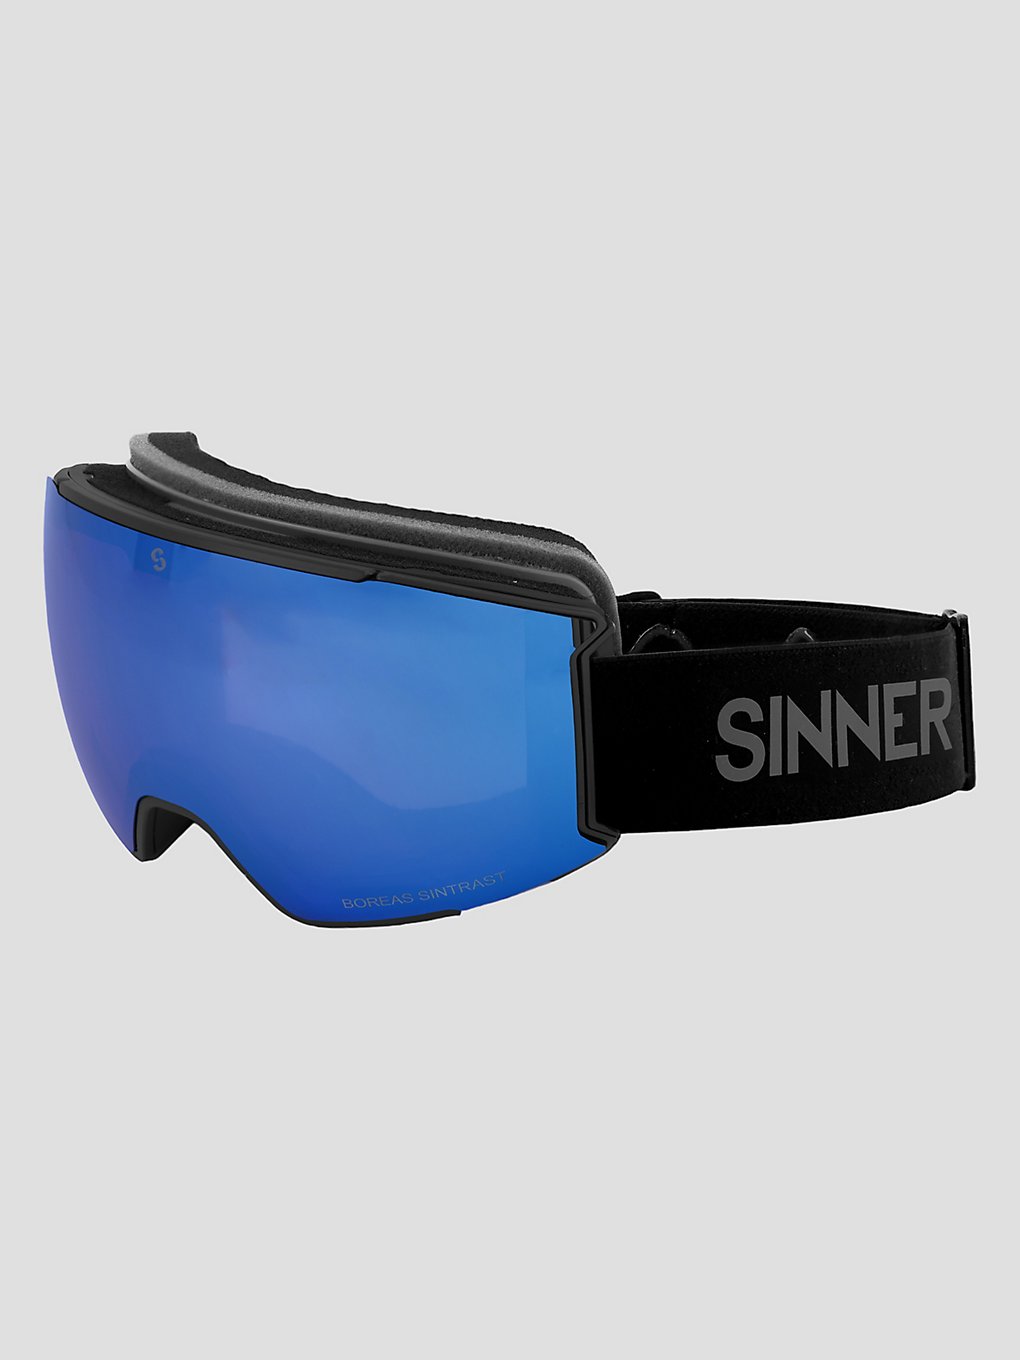 Sinner Boreas Matte Black Goggle blue and orange sintrast kaufen